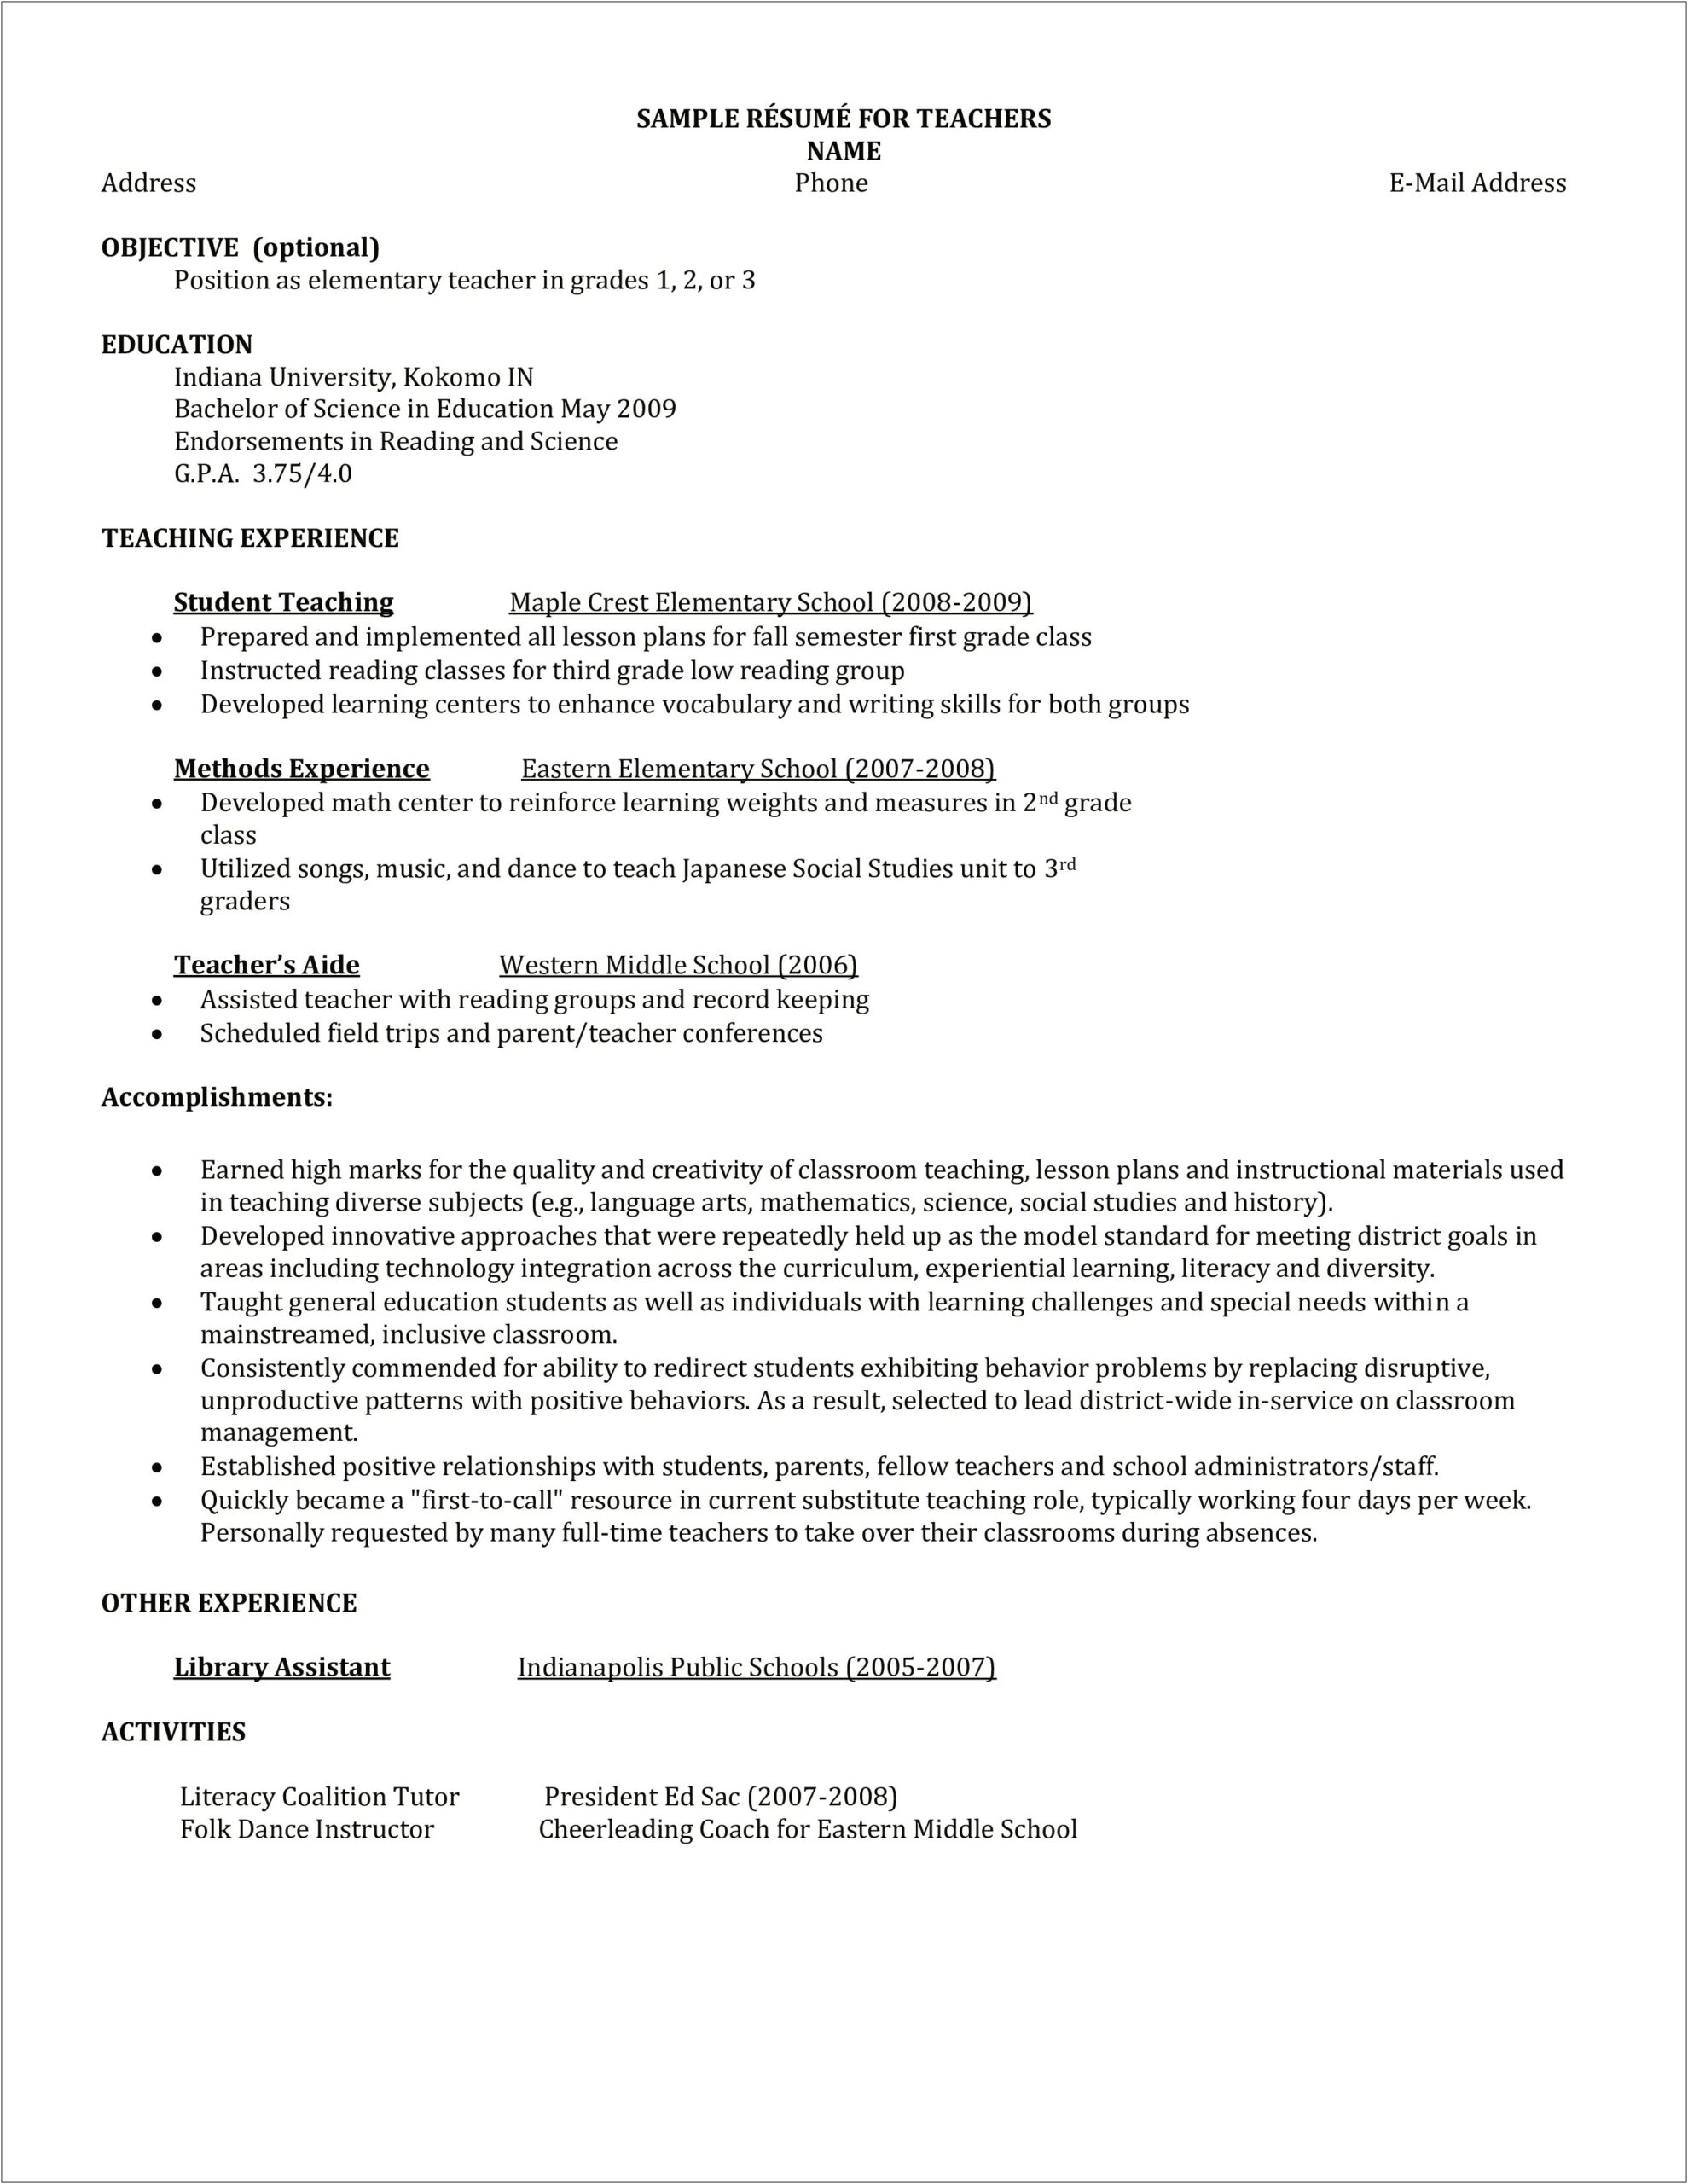 Sample Resume For Elementary School Tutor